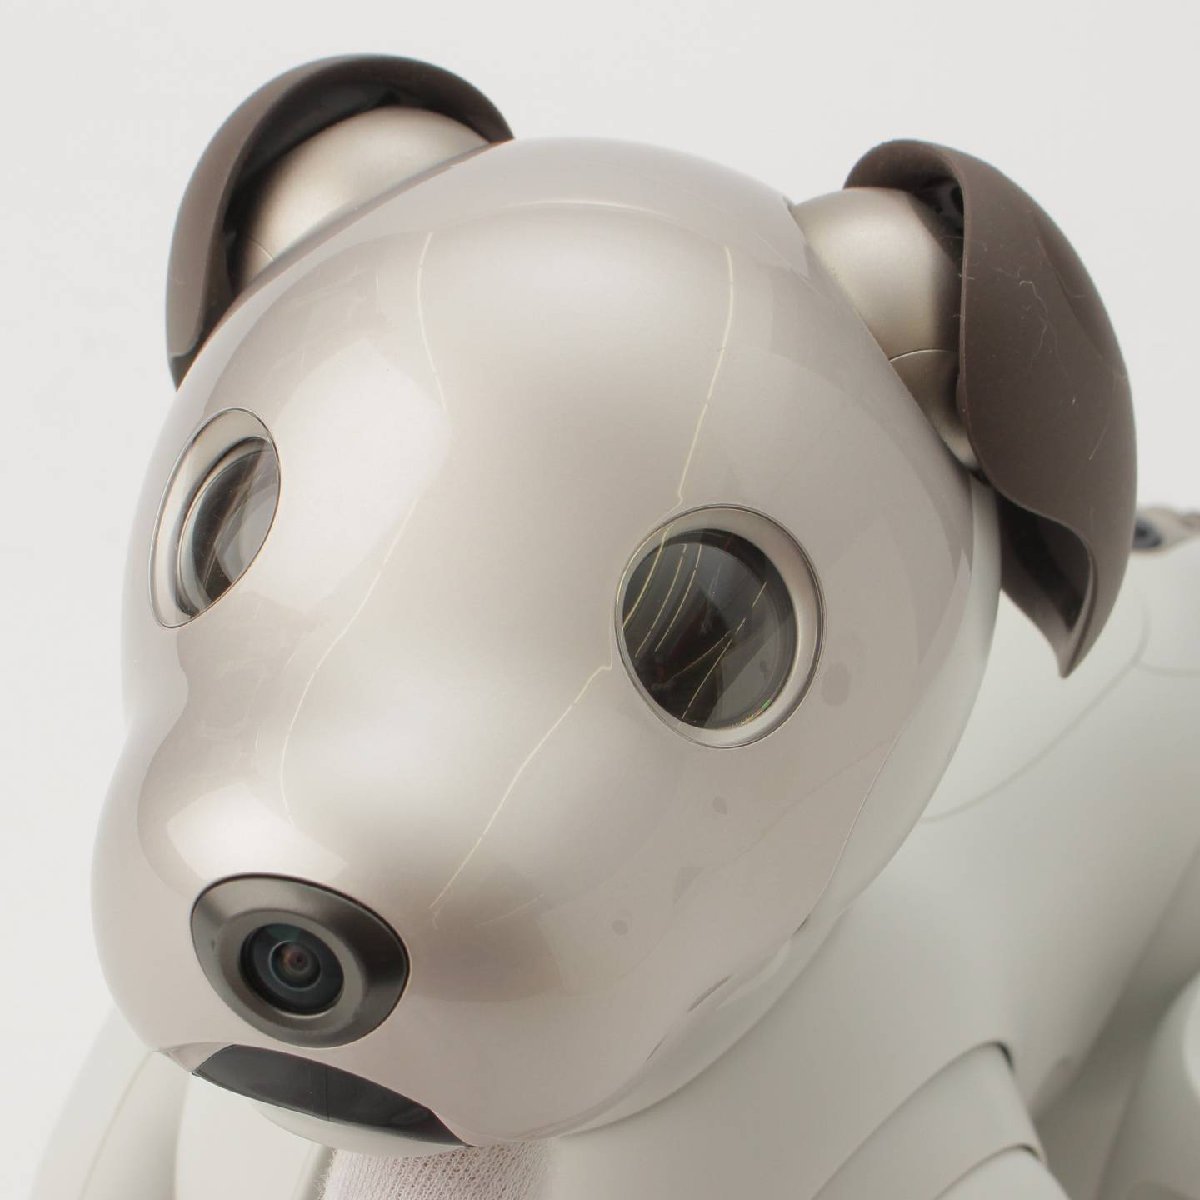 【アイロボット】iRobot　アイボ aibo 犬型 バーチャル ペット ロボット ERS-1000 ベーシックホワイト 【正規品保証】188413